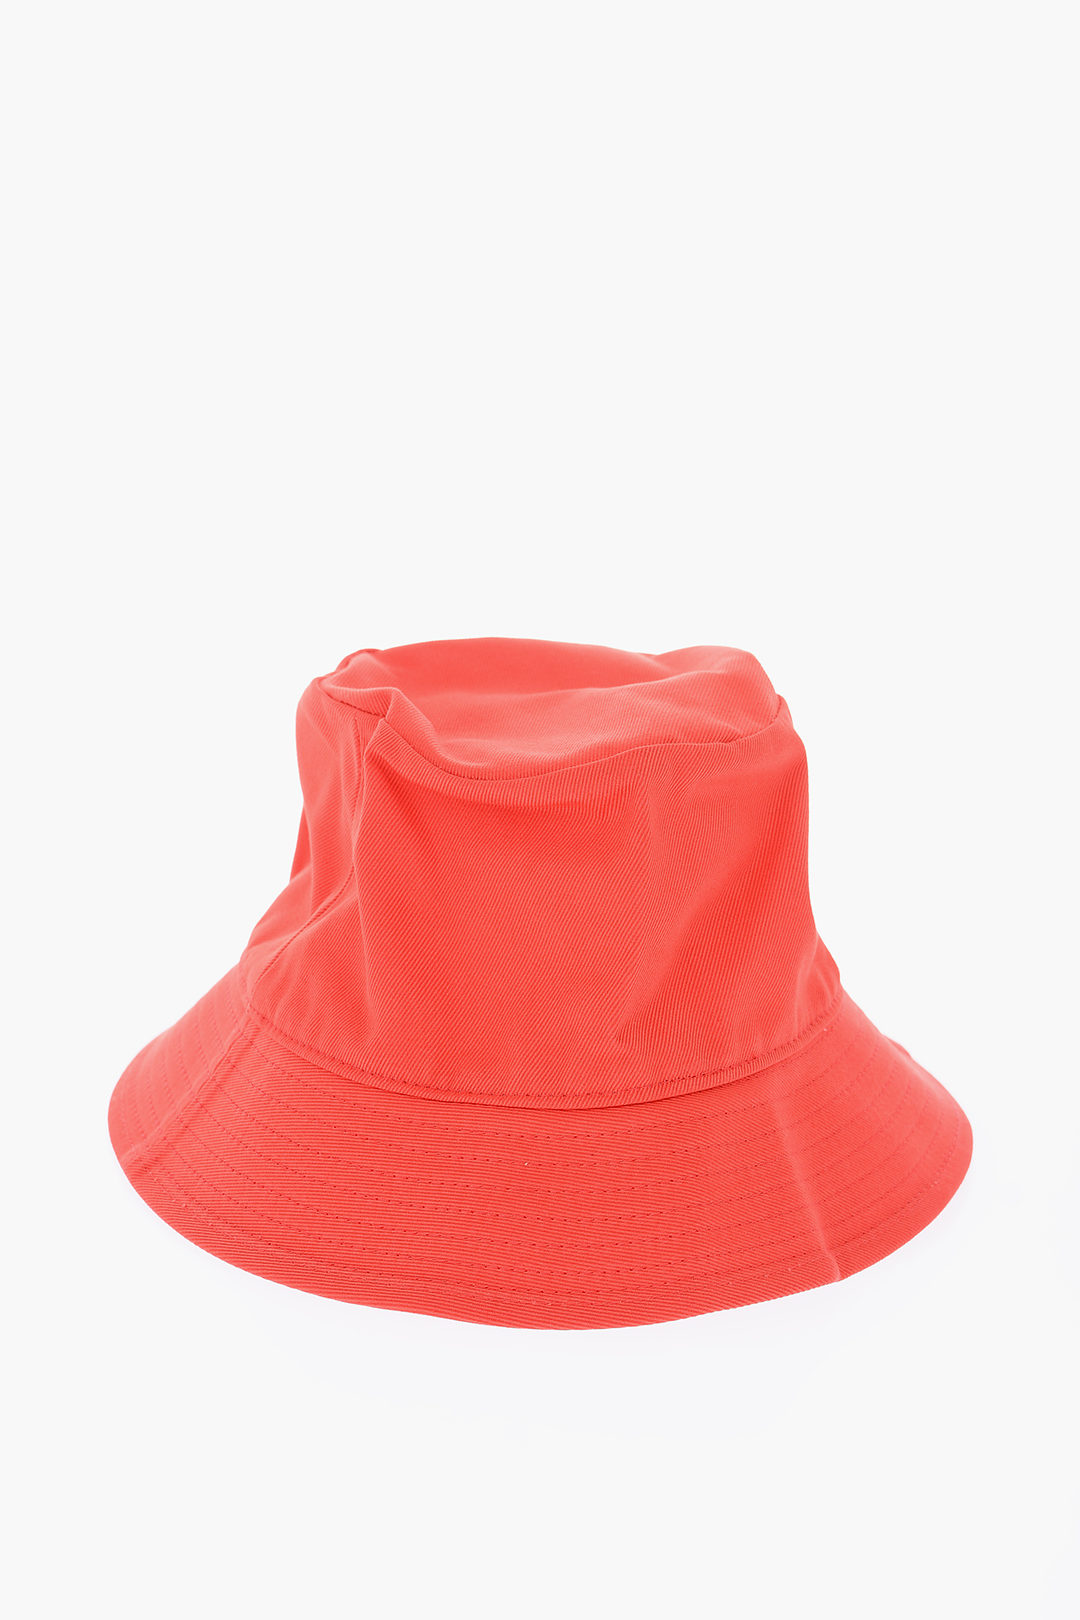 Celine logo printed fishing hat men - Glamood Outlet